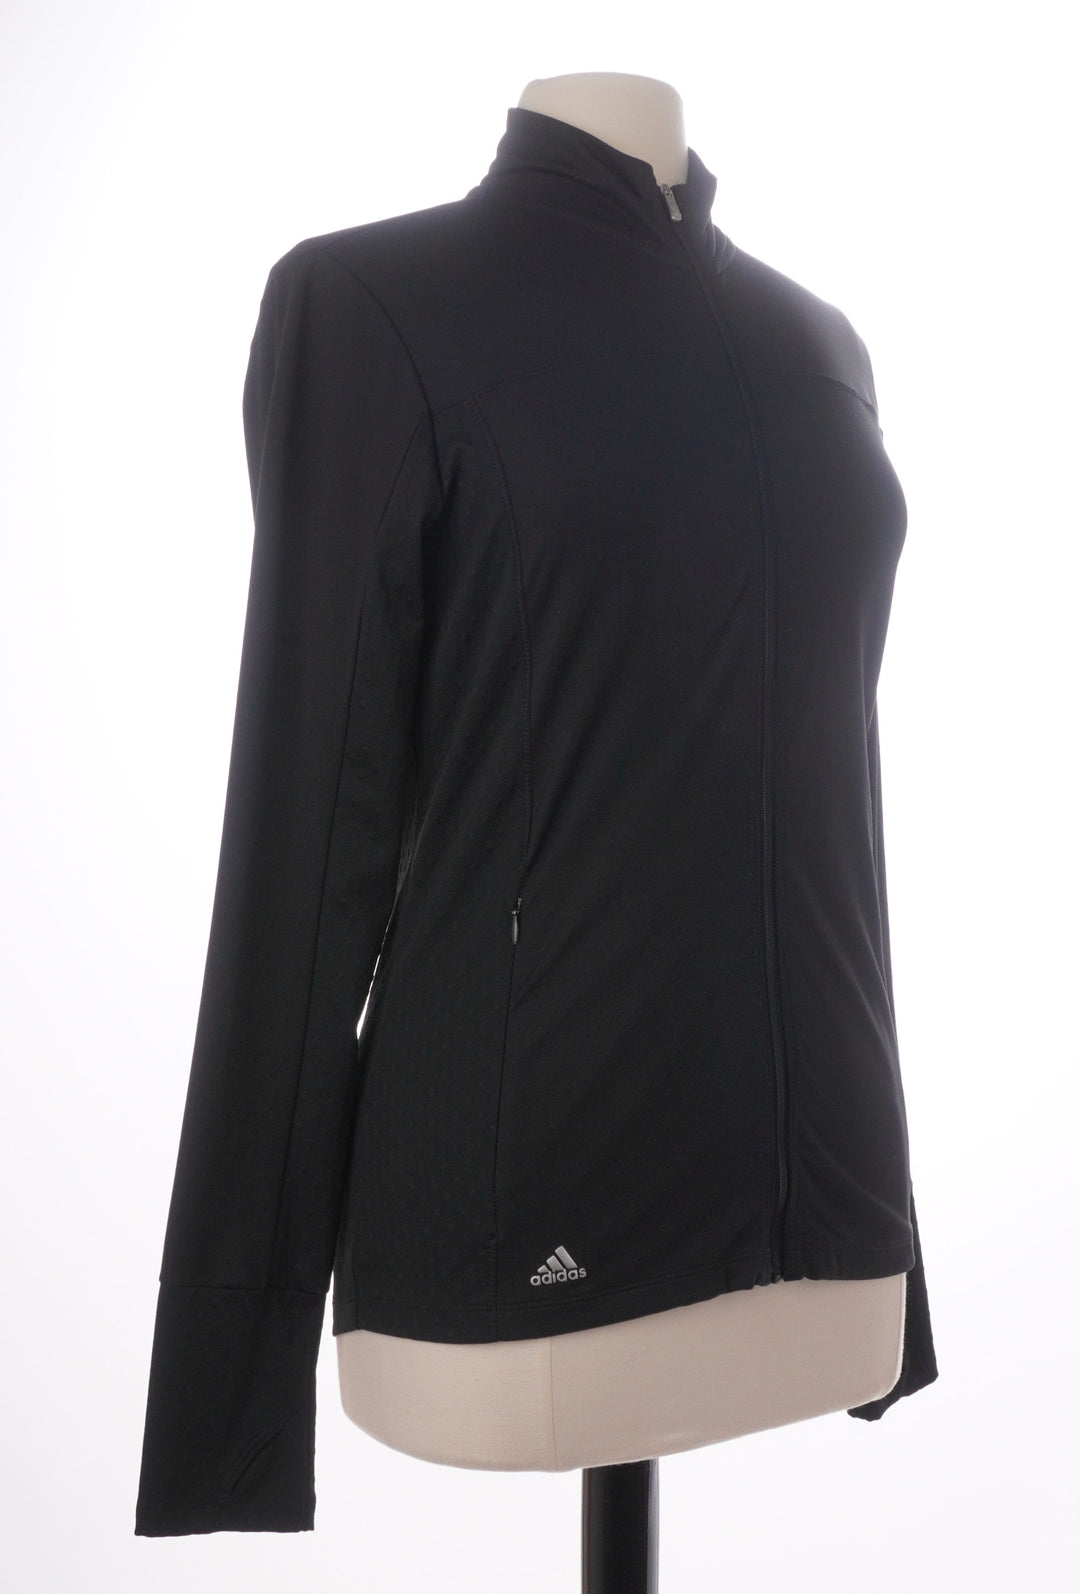 Adidas Lightweight Black Dotted Zip Up Jacket - Size Medium - Skorzie